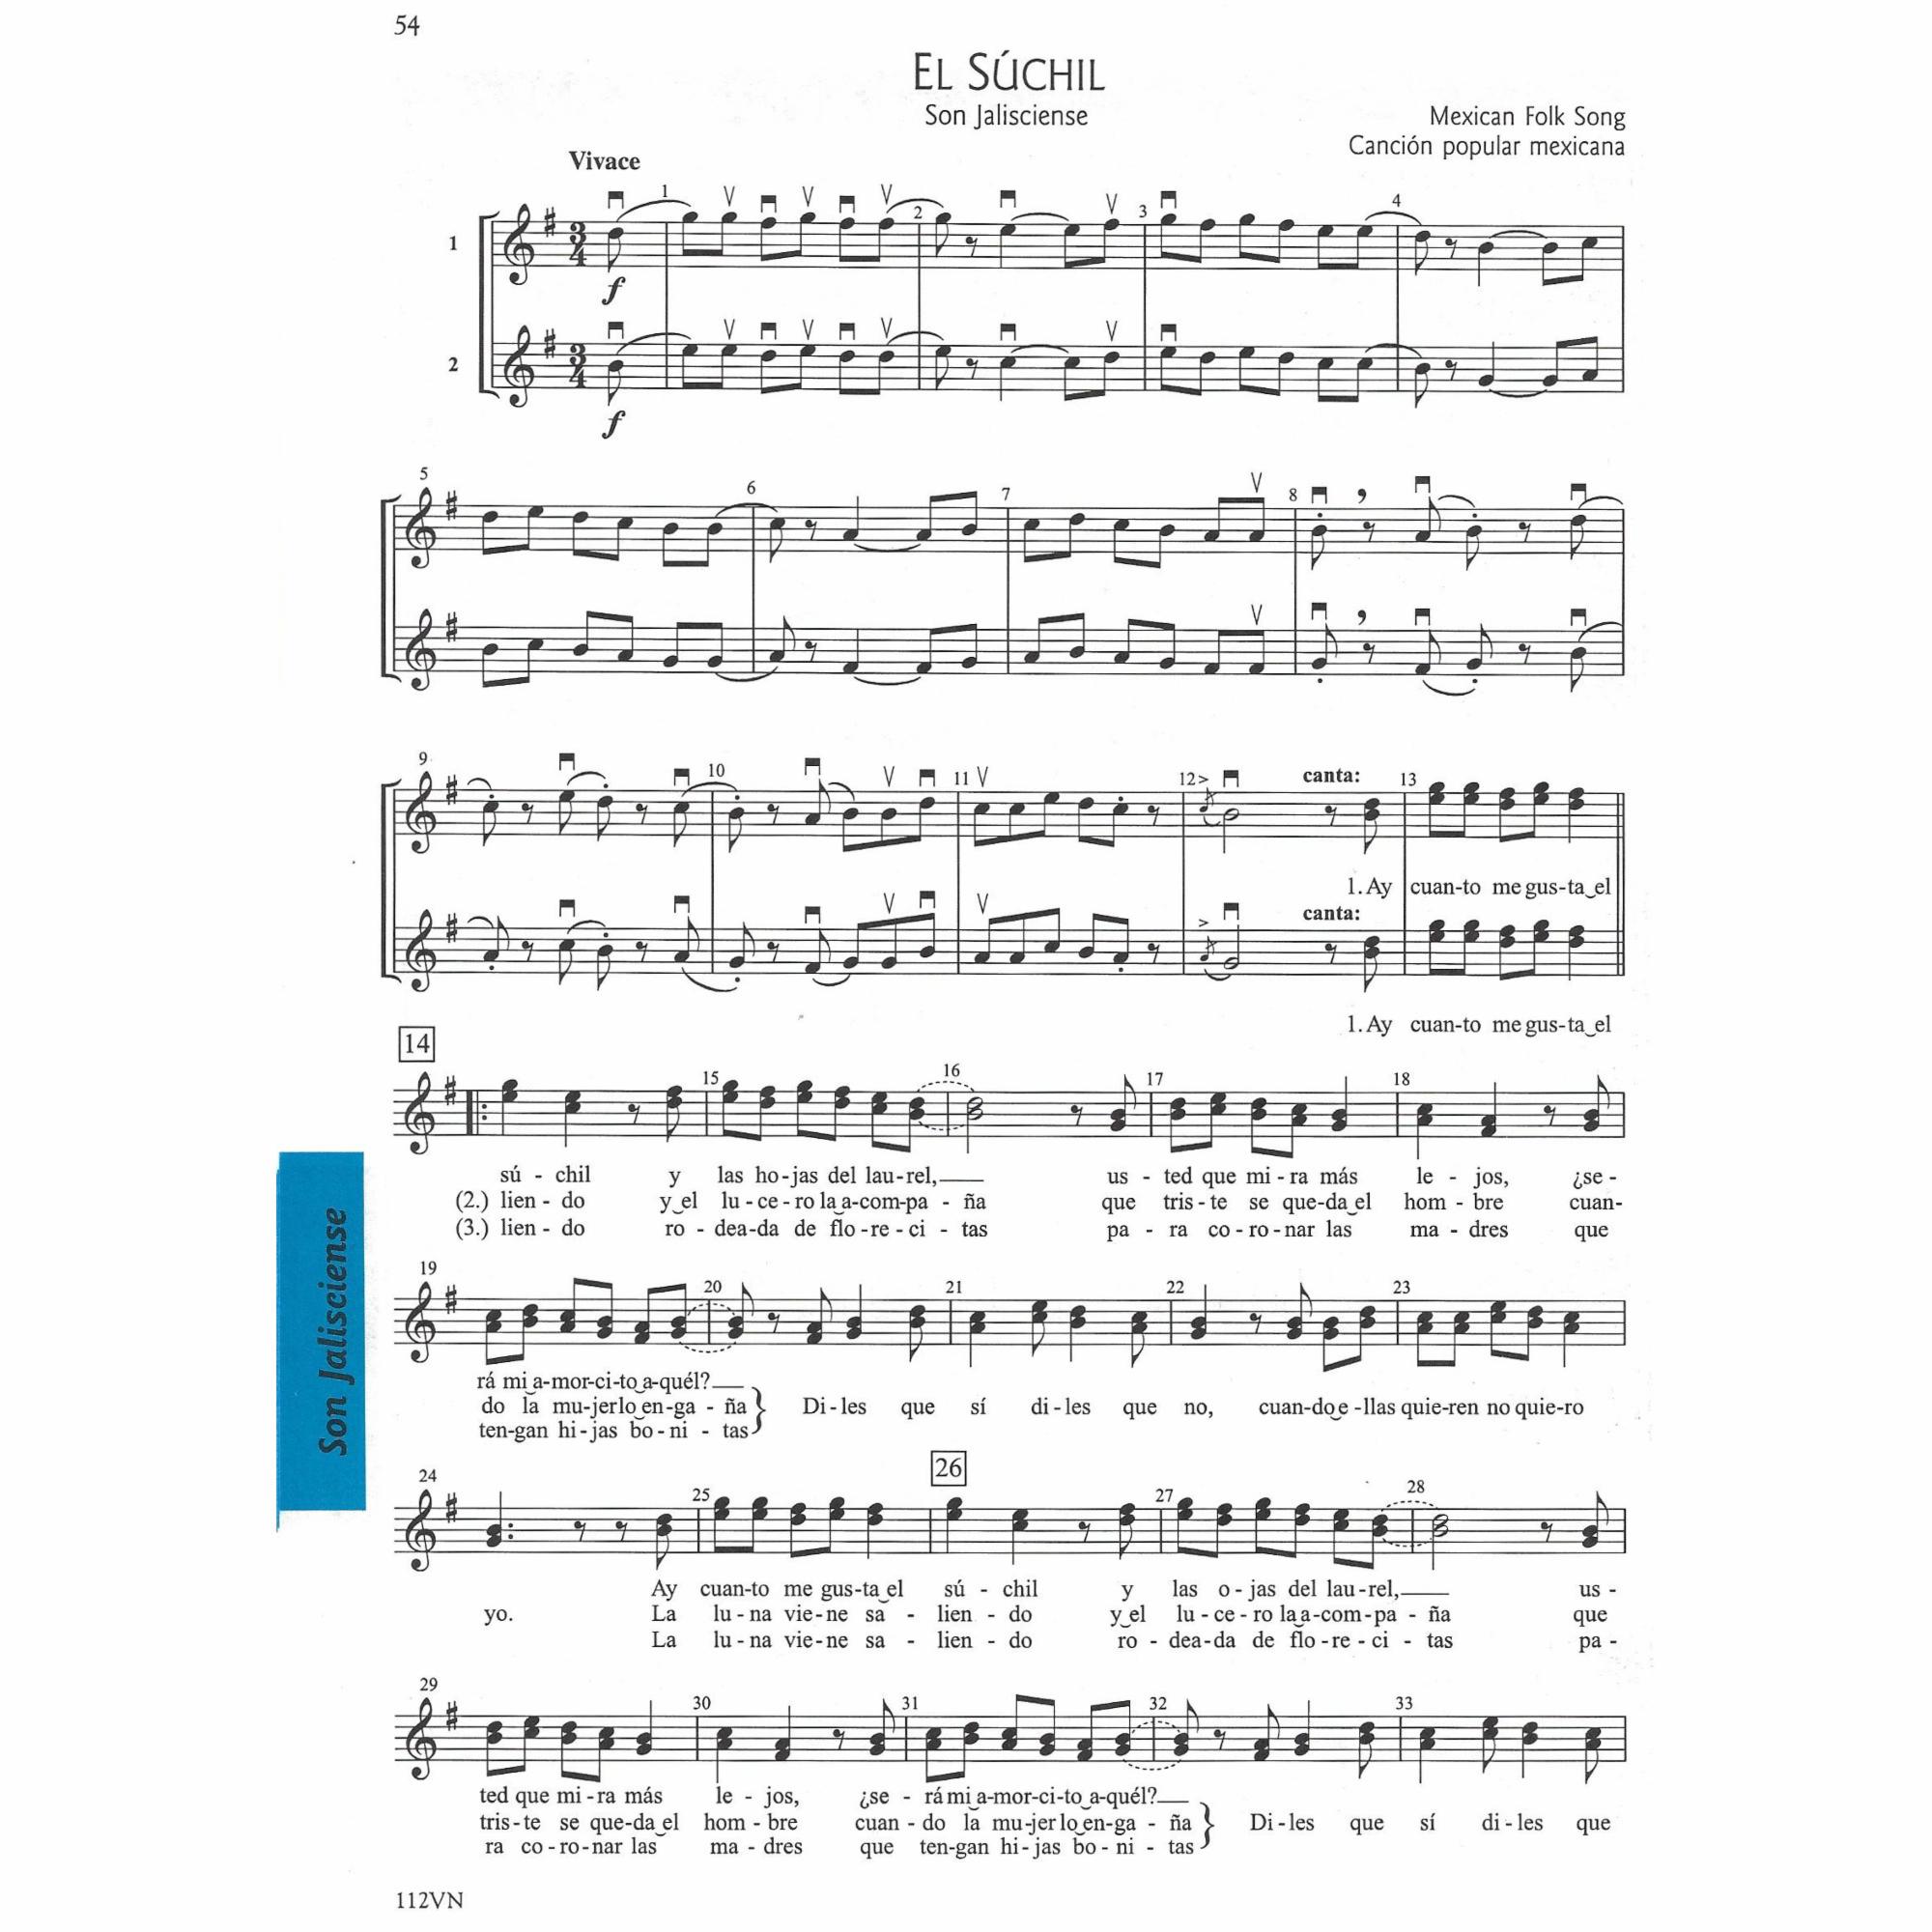 Sample: Violin (Pg. 54)